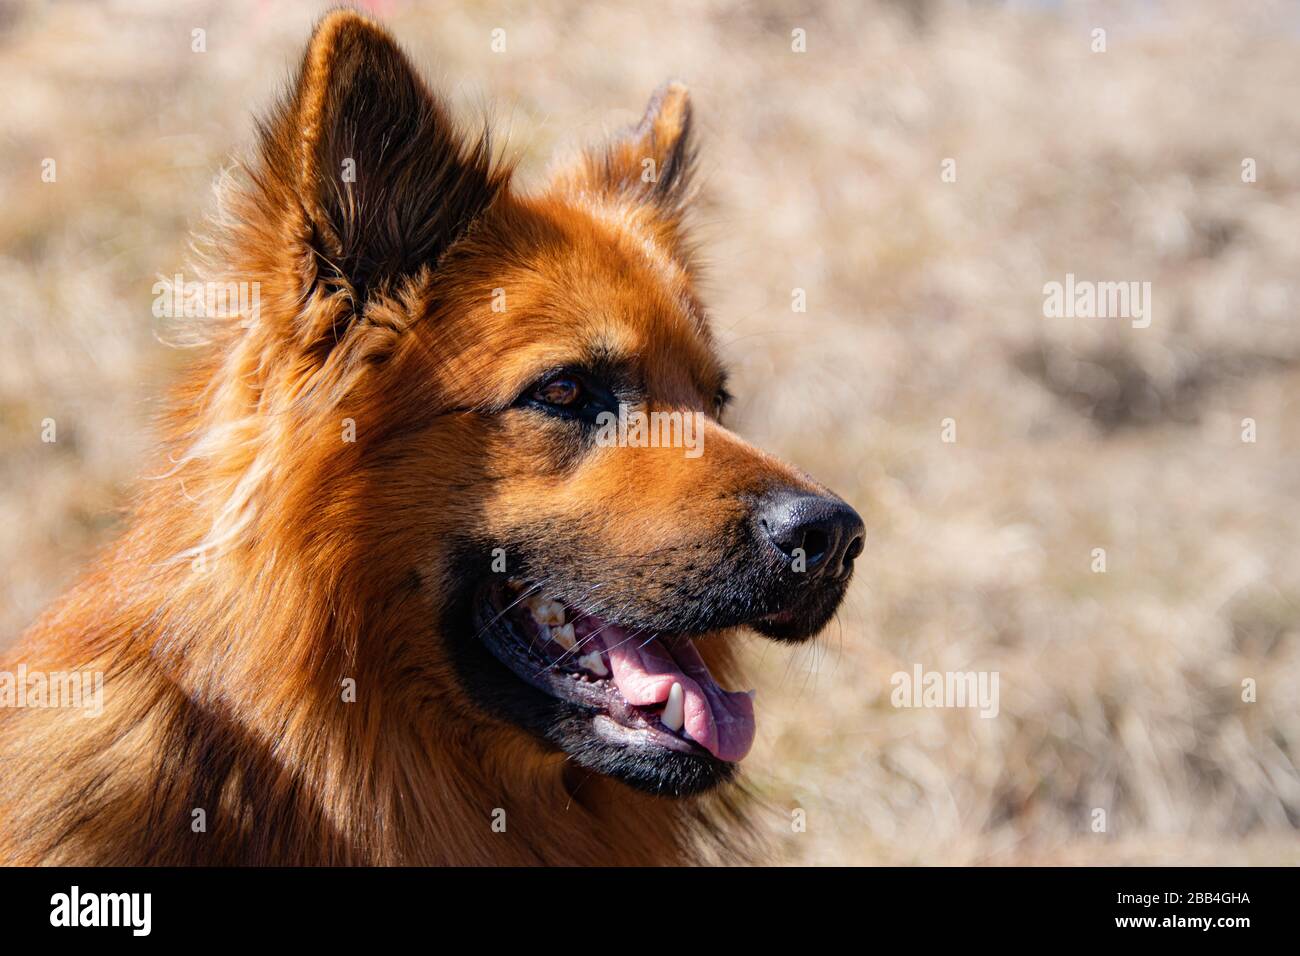 visage d'un chien brun-rouge, nez noir, bouche ouverte, dents et langue, fond flou, fourrure douce Banque D'Images